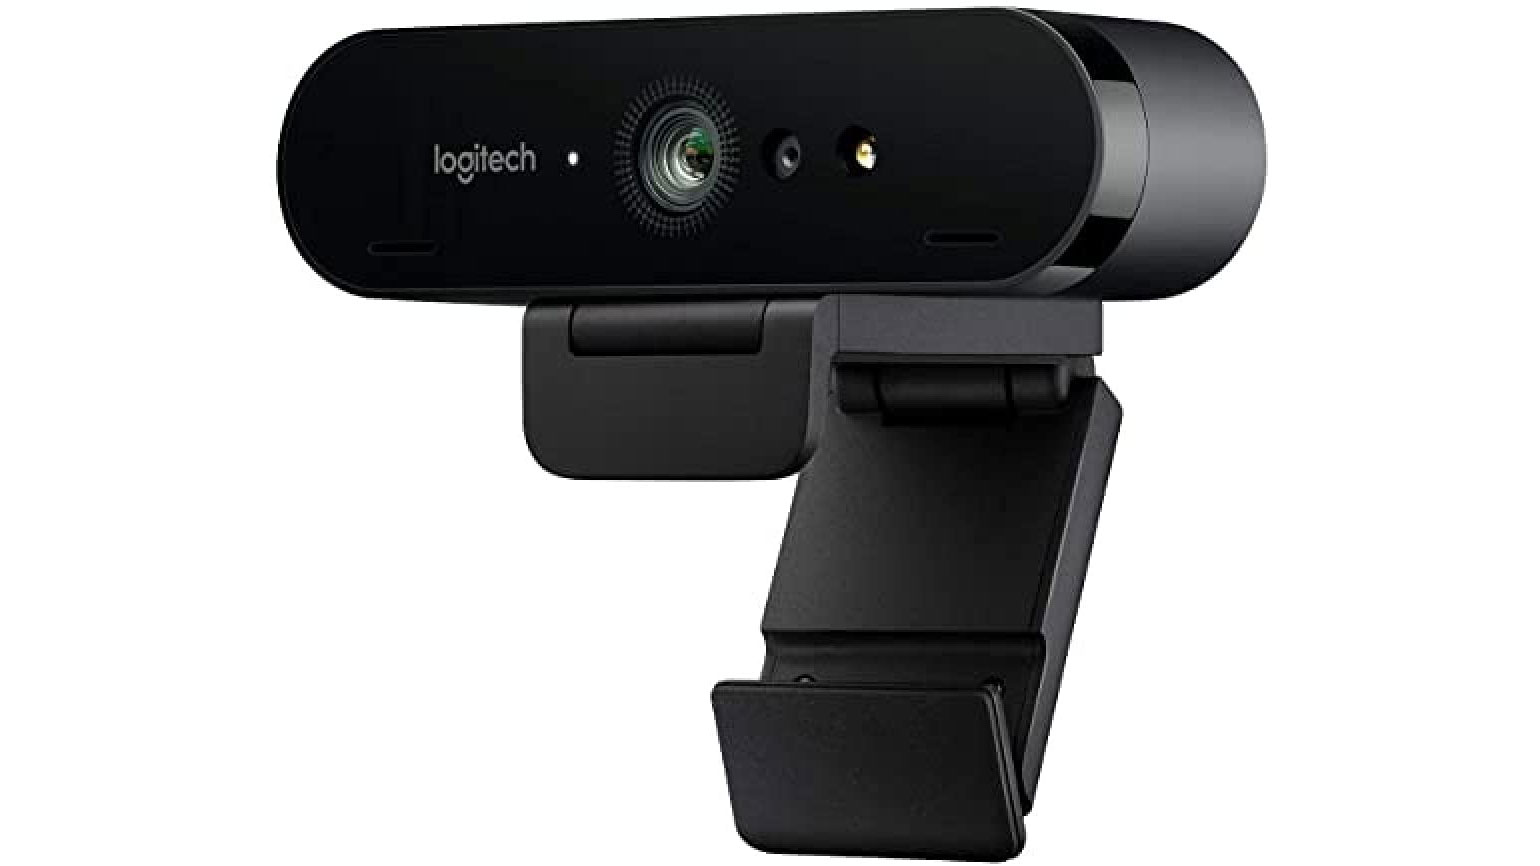 Bästa MacBook-webbkamera: Logitech Brio Ultra HD Pro